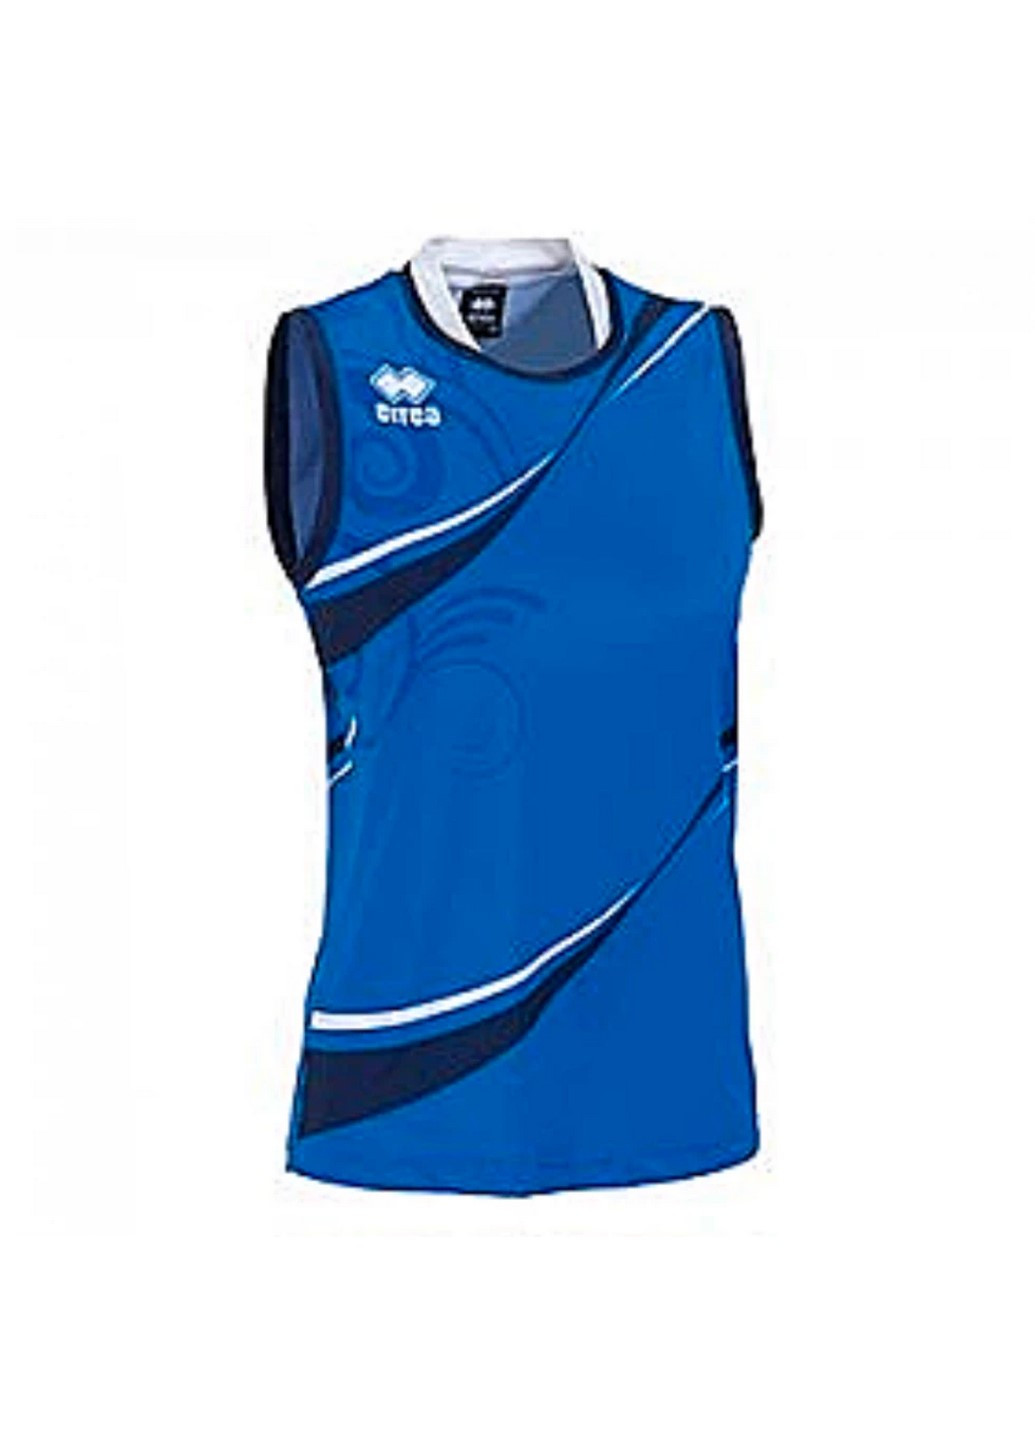 Синяя летняя футболка игровая женская belem maglia donna smanicata d700-000664 Errea